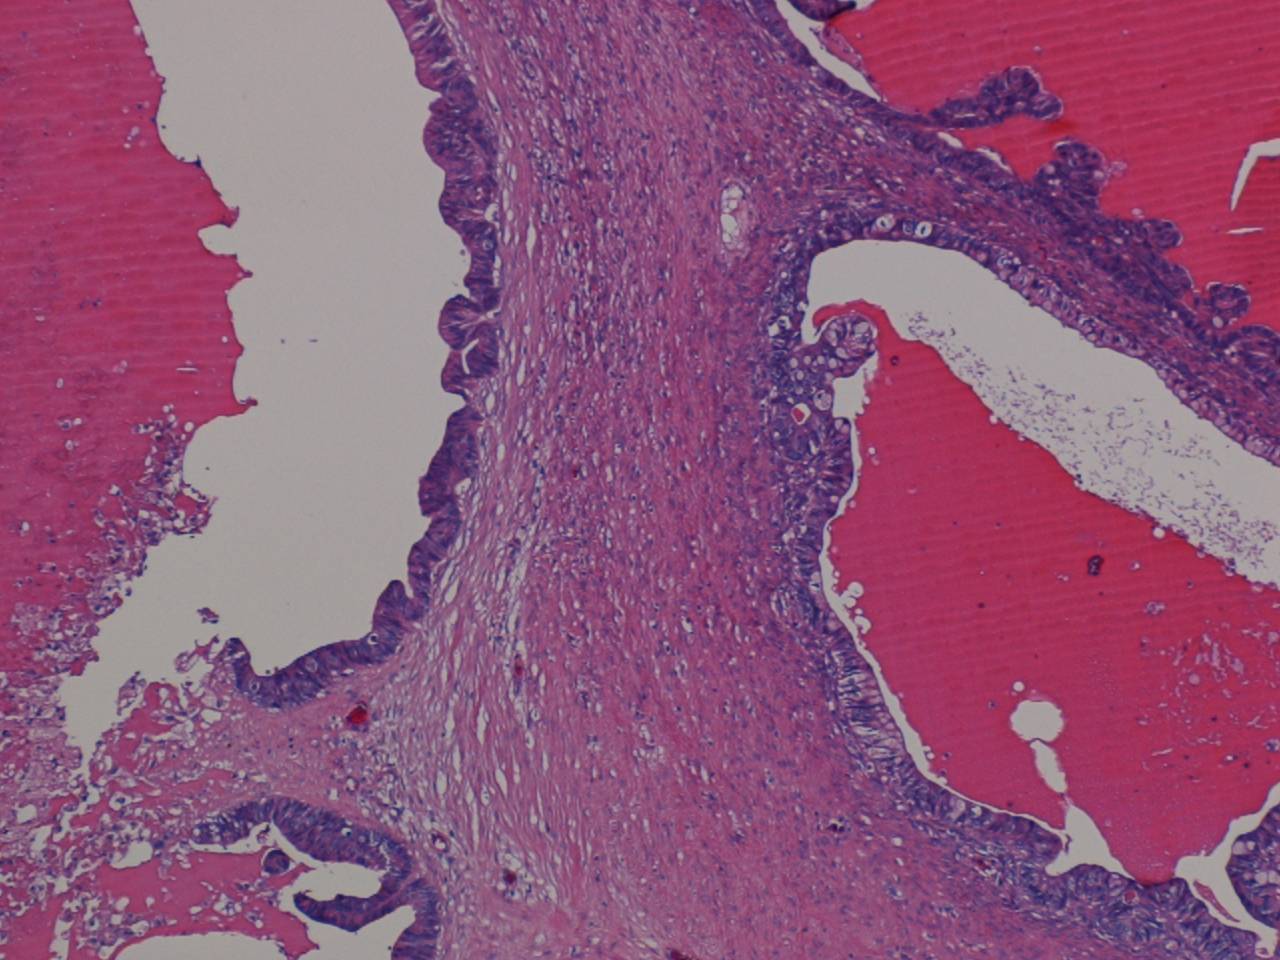 Imagen de Tumores en colon y ovario / Tumors in colon and ovary.